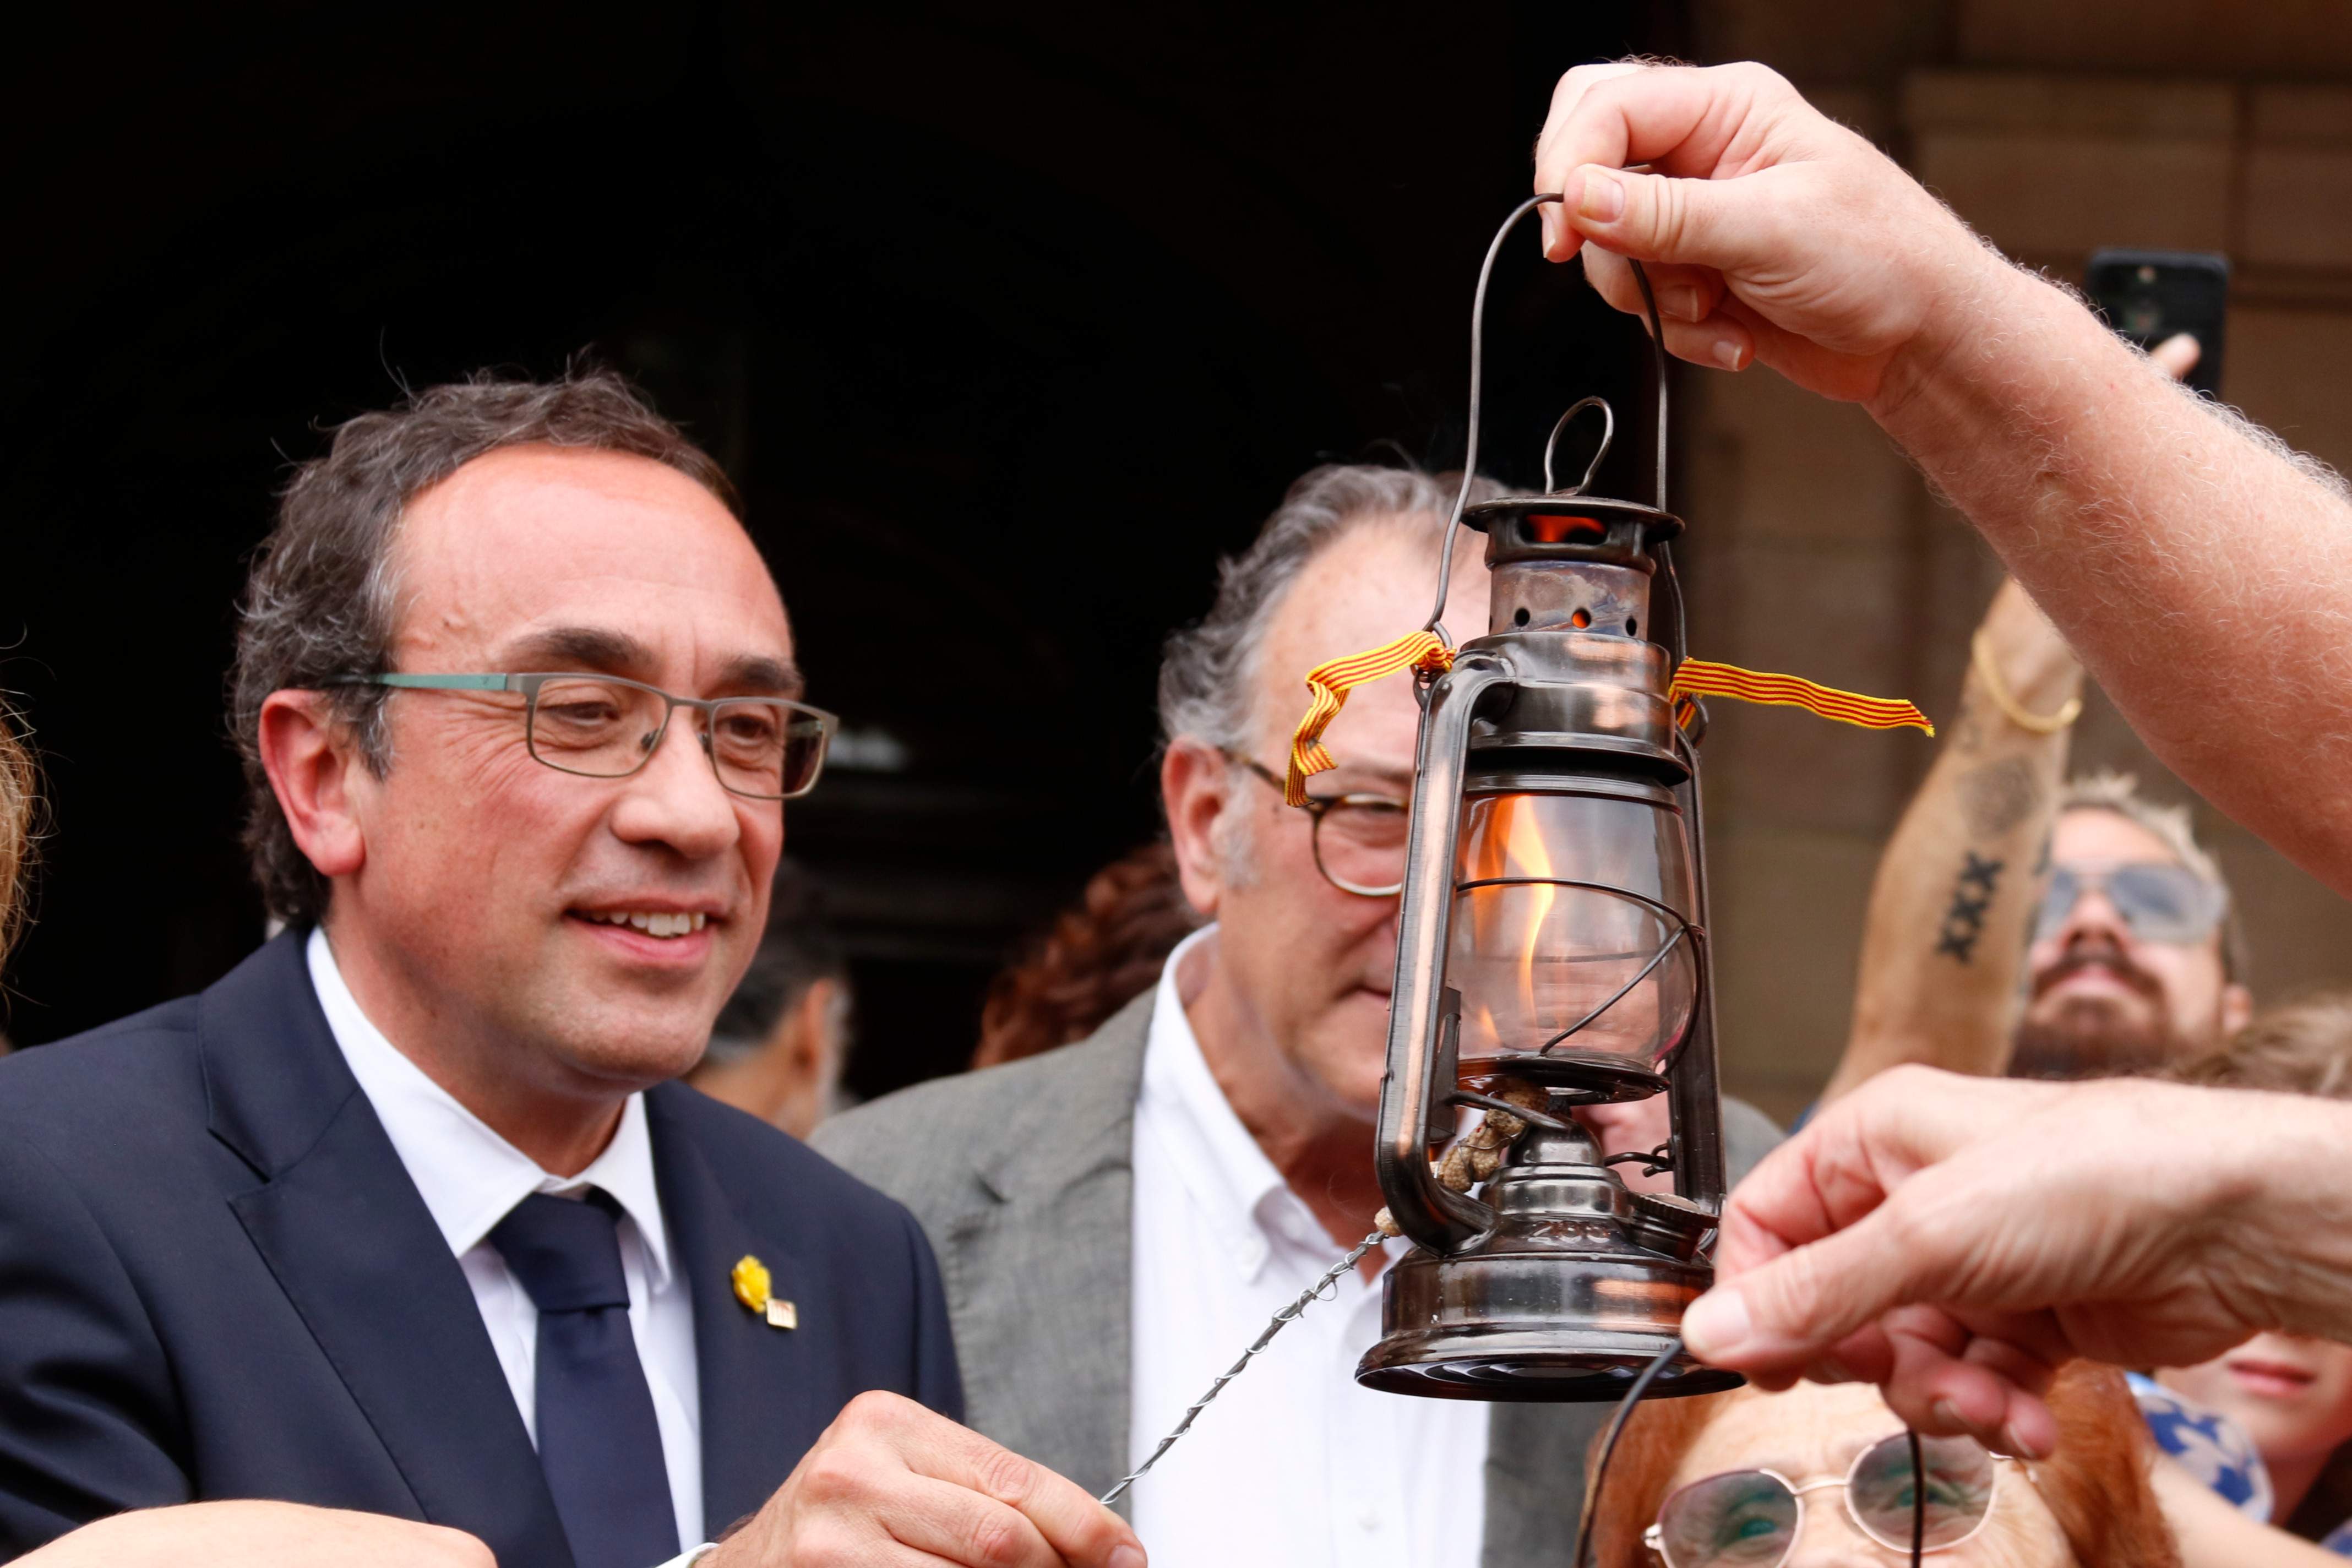 Rull rep la Flama del Canigó al Parlament i demana lluitar contra els "atacs insòlits" al català